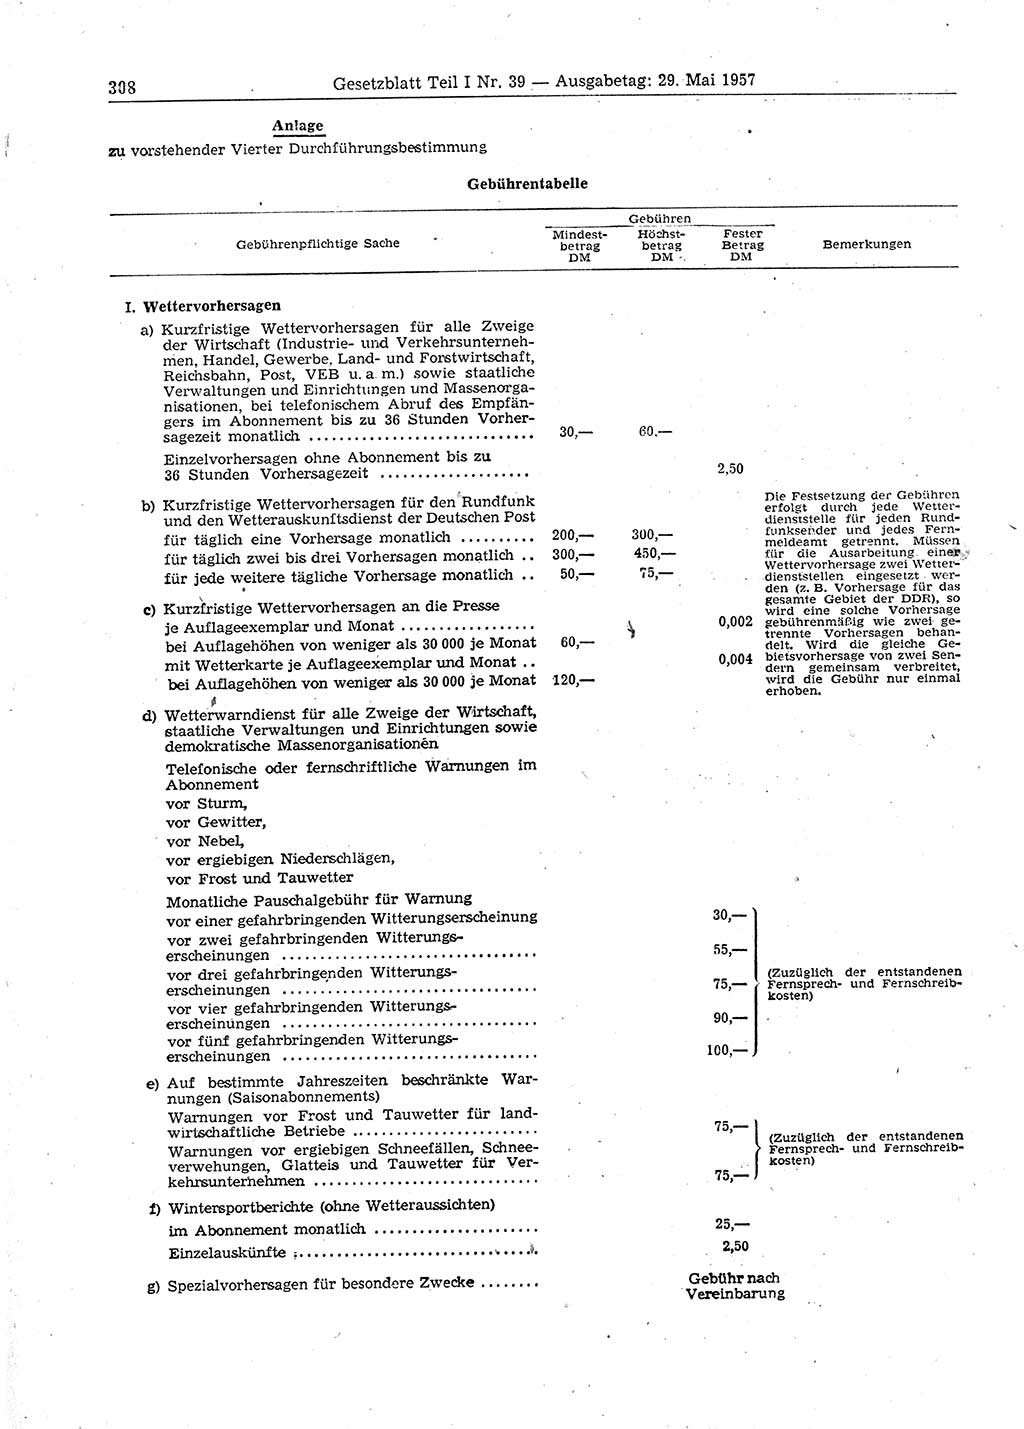 Gesetzblatt (GBl.) der Deutschen Demokratischen Republik (DDR) Teil Ⅰ 1957, Seite 308 (GBl. DDR Ⅰ 1957, S. 308)